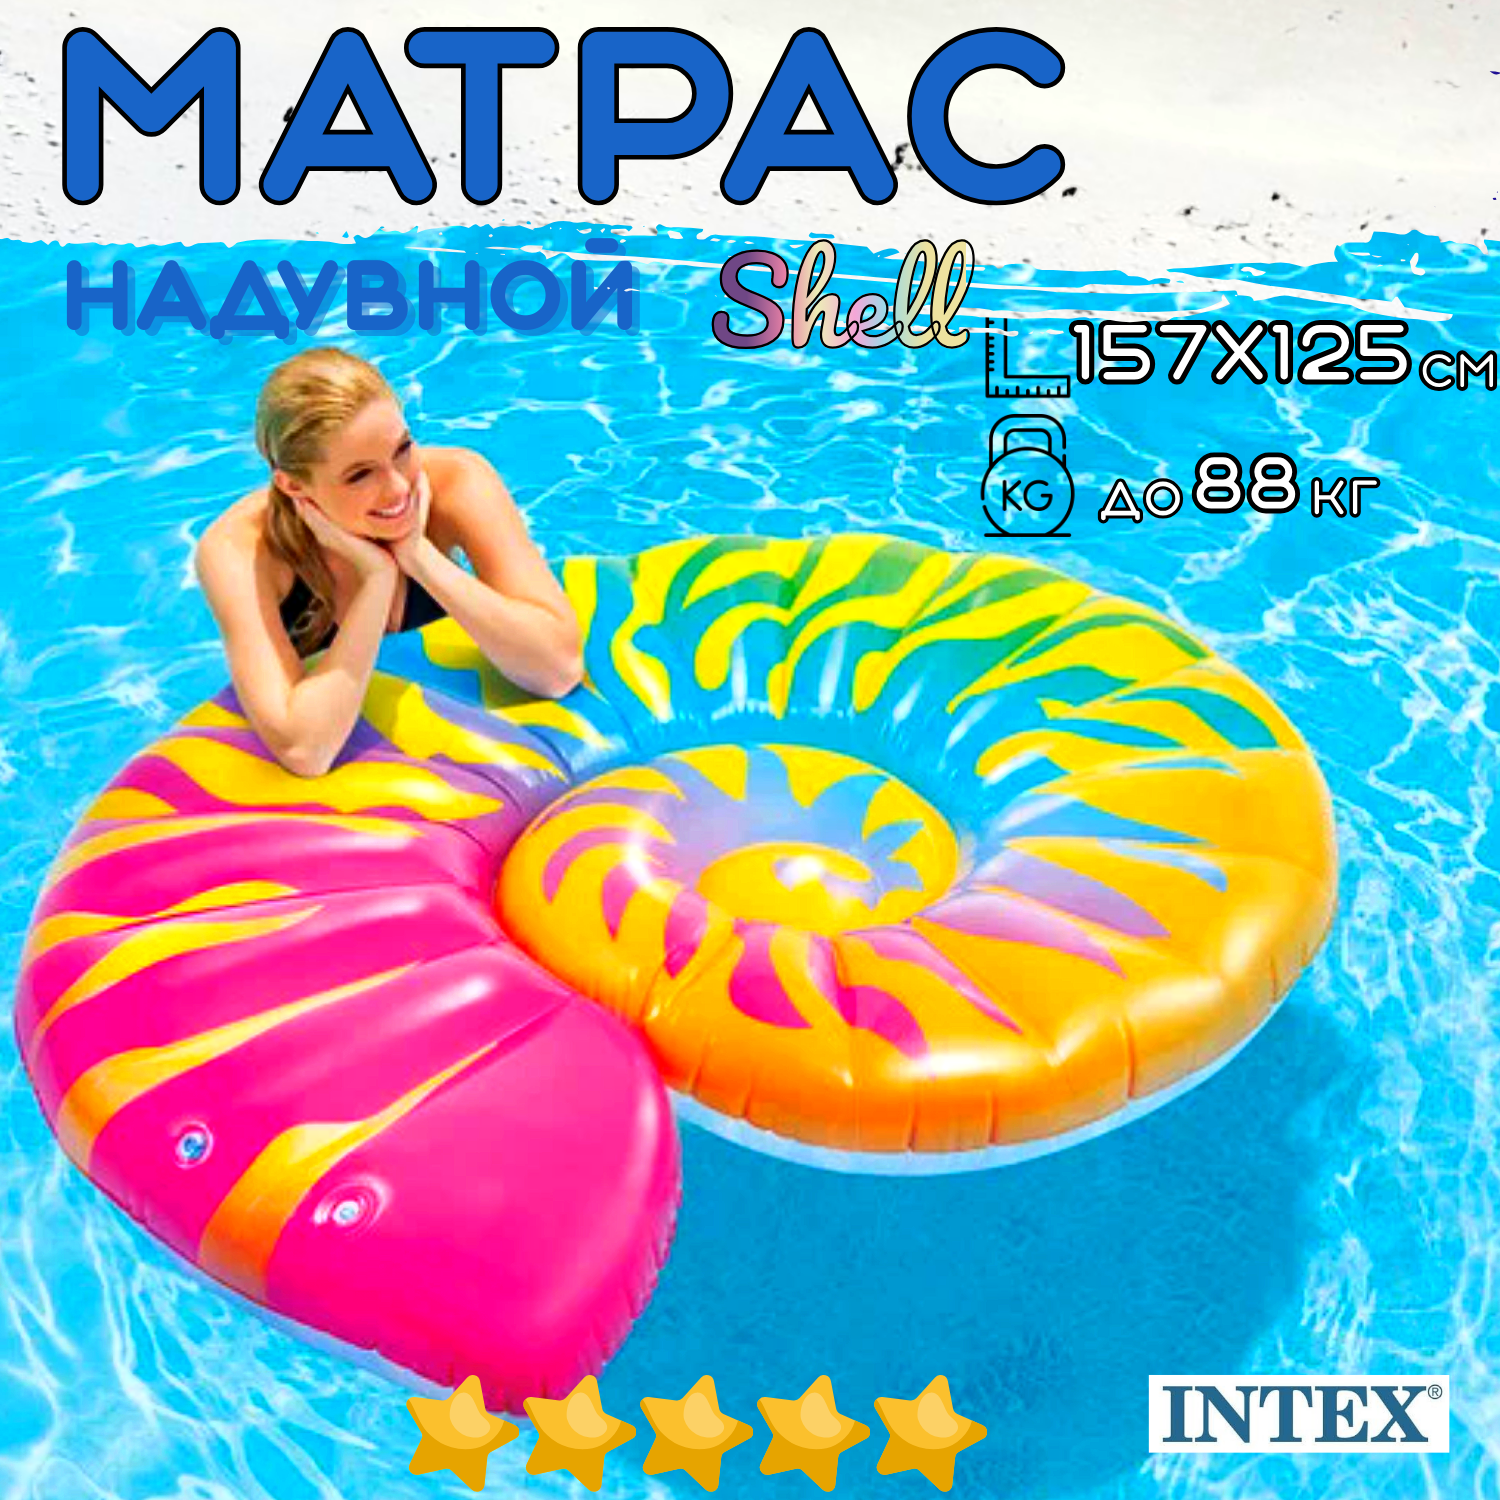 Матрас надувной пляжный INTEX Shell 157х127 см, одноместный, нагрузка до 88 кг, для взрослых и детей от 9 лет, без насоса, цвет яркий / 1 шт.